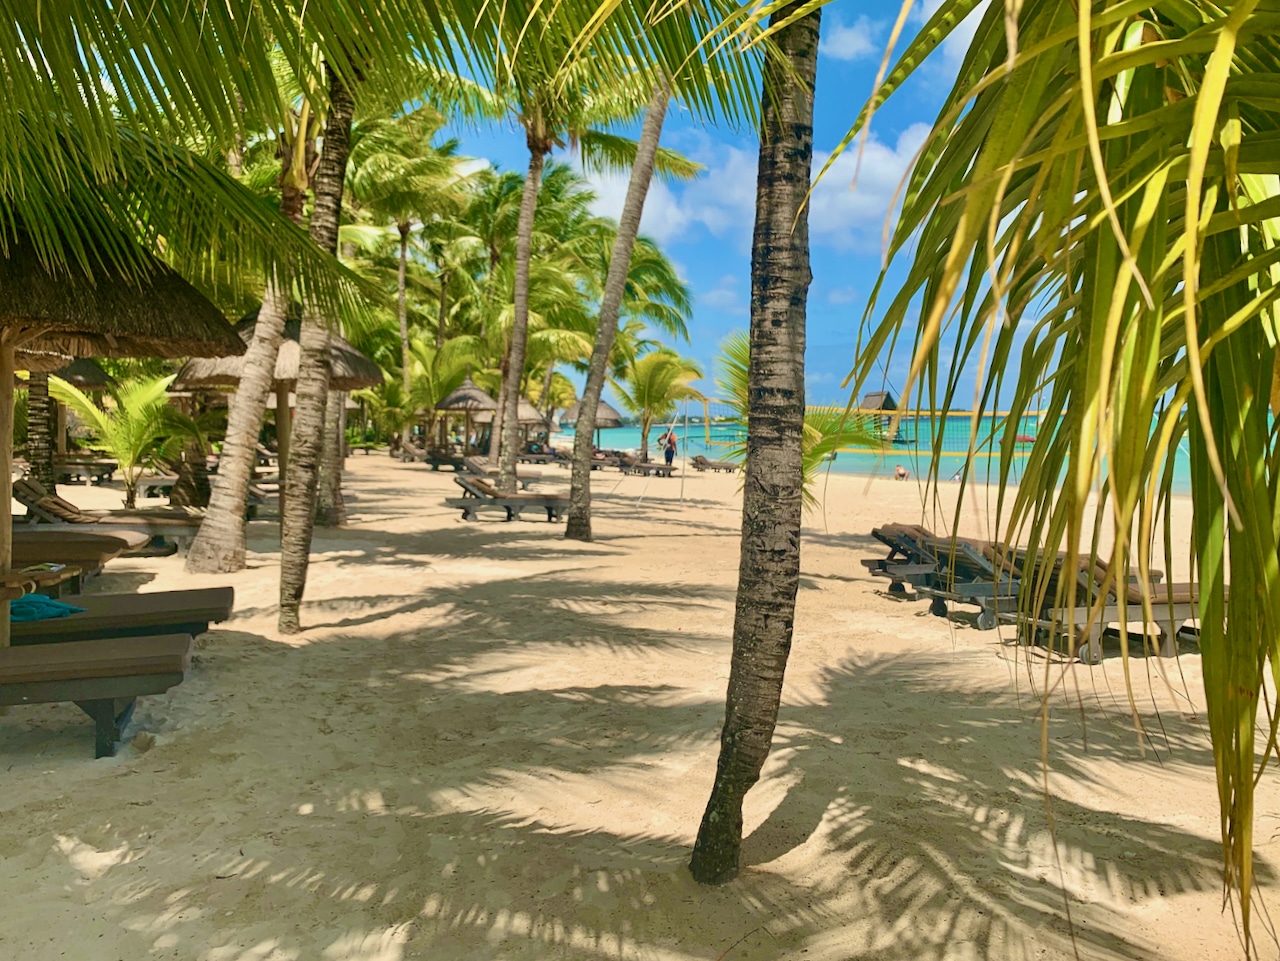 Meine erste Mauritius Erfahrung – Herzlich Willkommen im Paradies Mauritius ist ein einziger tropischer Sommertagstraum – herzlich Willkommen im Paradies. Foto: Sascha Tegtmeyer